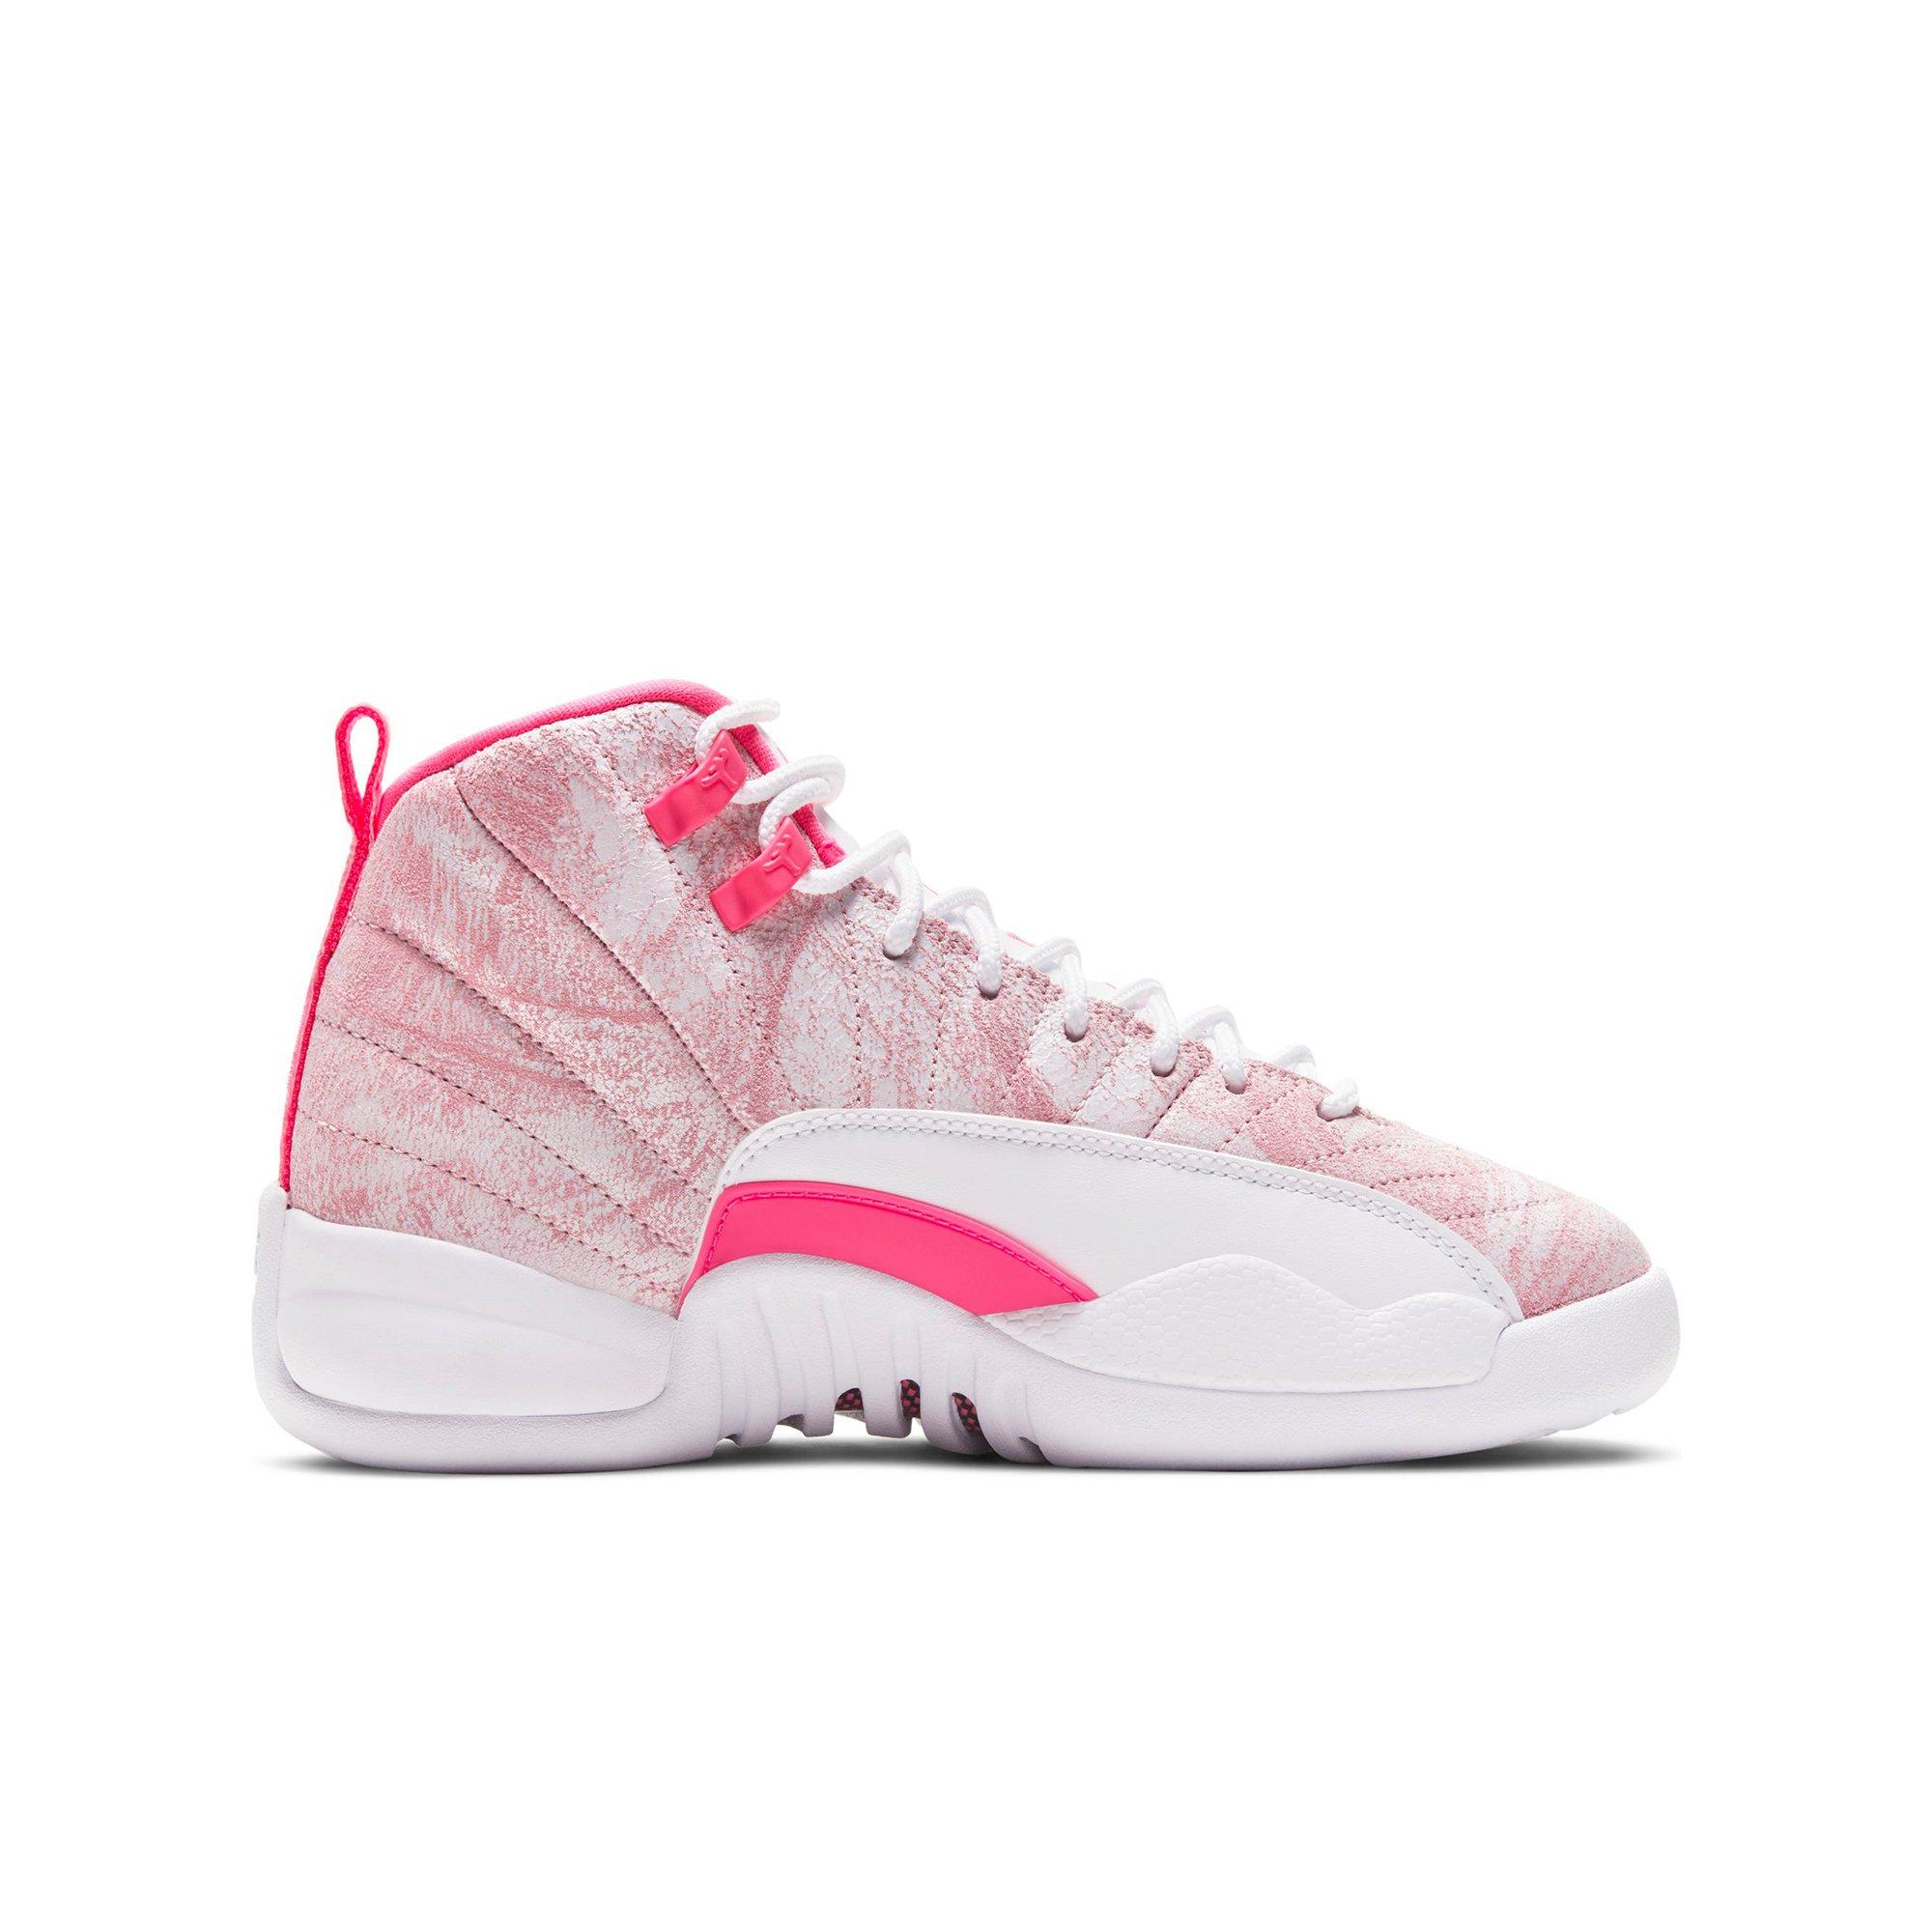 white and pink jordan 12